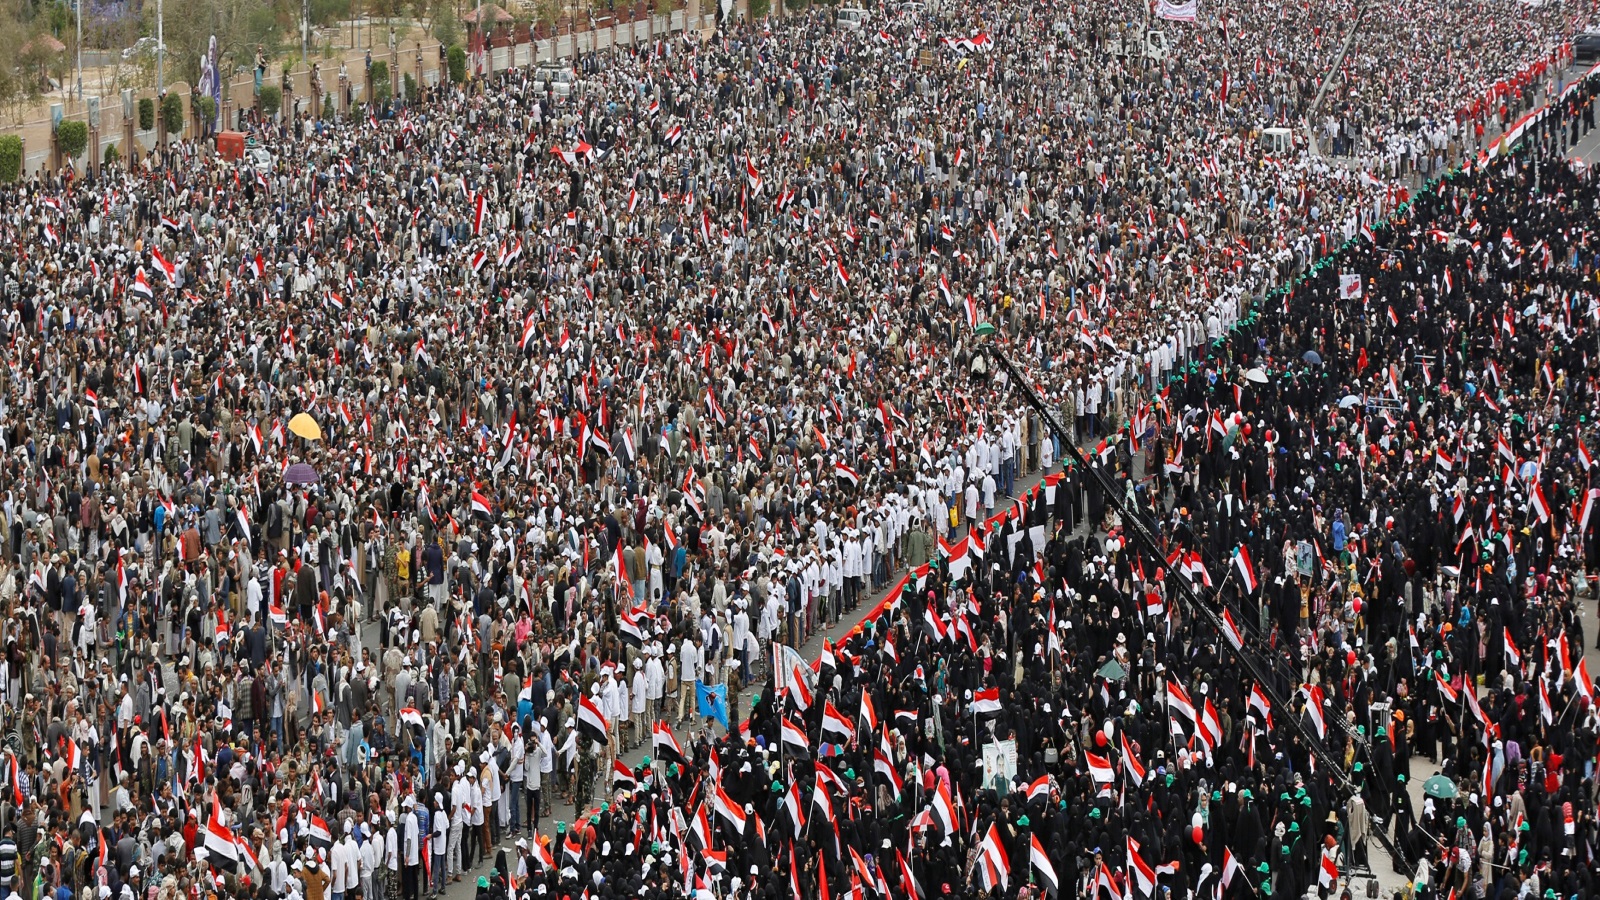 الخوف اليوم ليس على ضياع جمهوريّة اليمن في ظلّ هذه الحرب العبثيّة، الخوف هو من اعتماد الجمهوريّة الأولى الكائنة قبل الحرب، والرغبة في العودة إليها على أنها الأساس